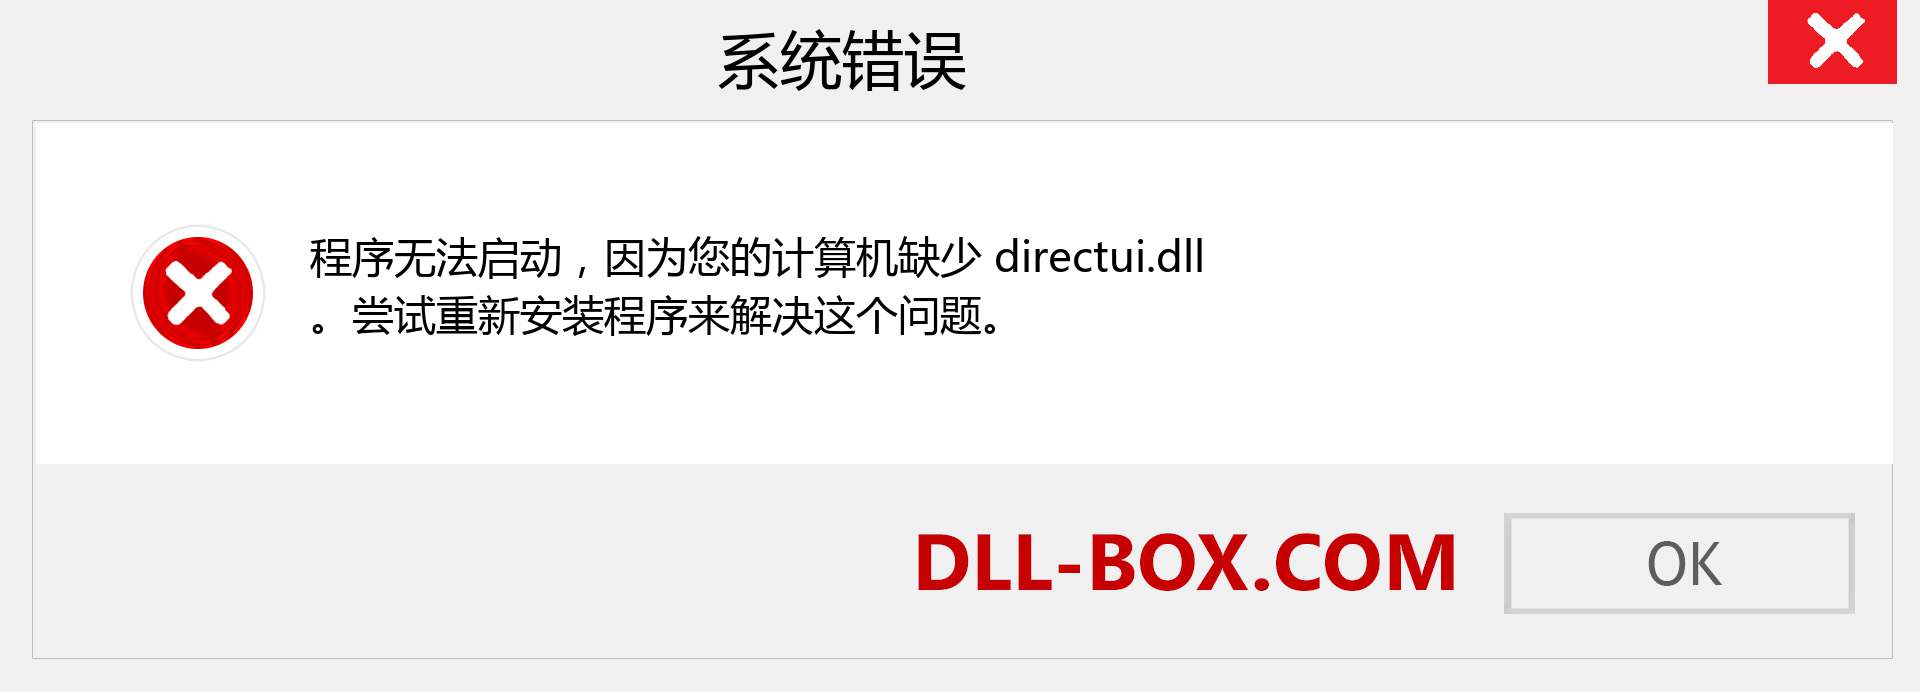 directui.dll 文件丢失？。 适用于 Windows 7、8、10 的下载 - 修复 Windows、照片、图像上的 directui dll 丢失错误